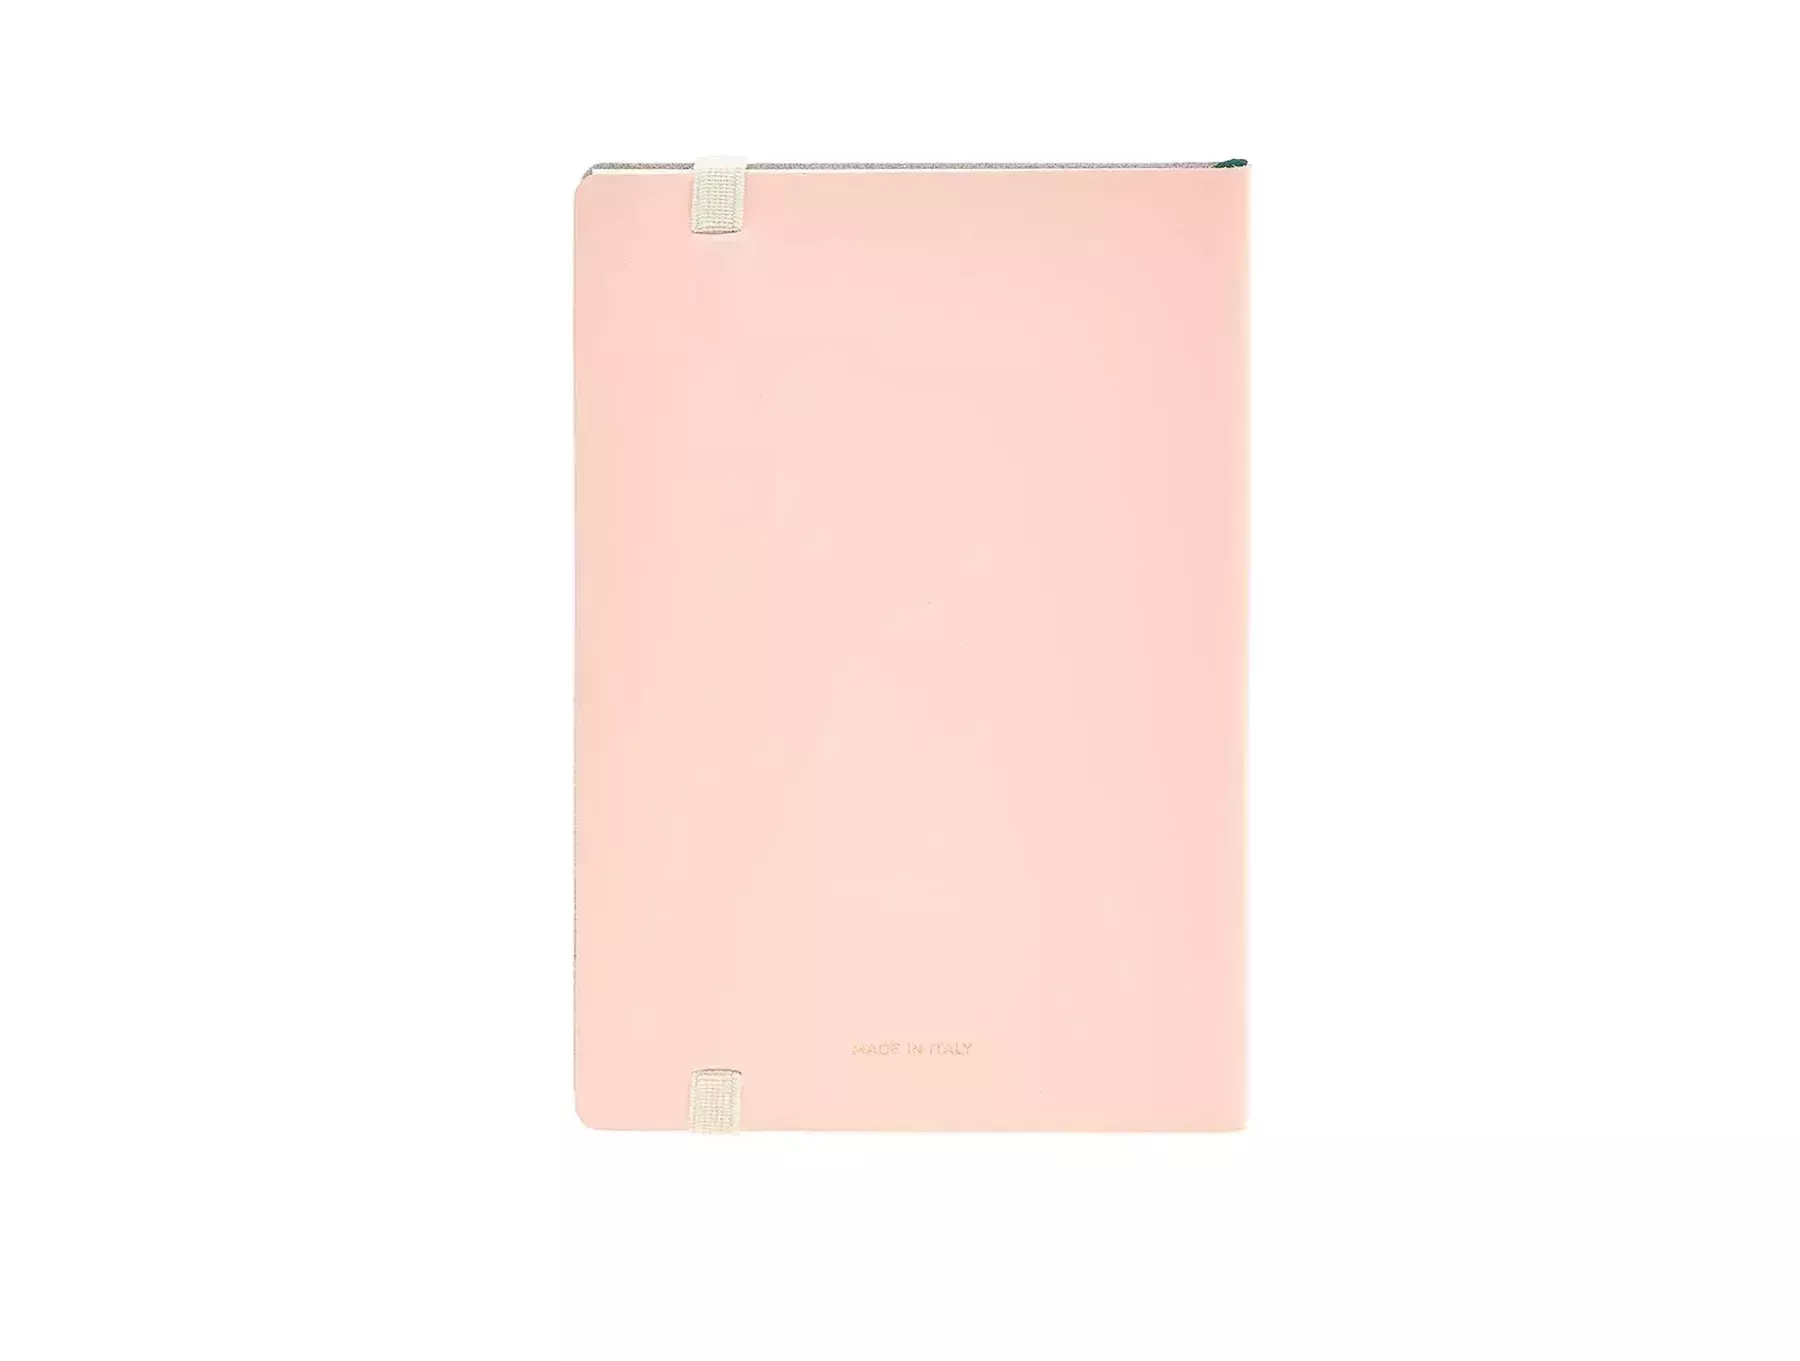 Notebook A4 a quadri da 5 mm: Taccuino A4, quadri 5mm senza margine, design  floreale (Italian Edition)